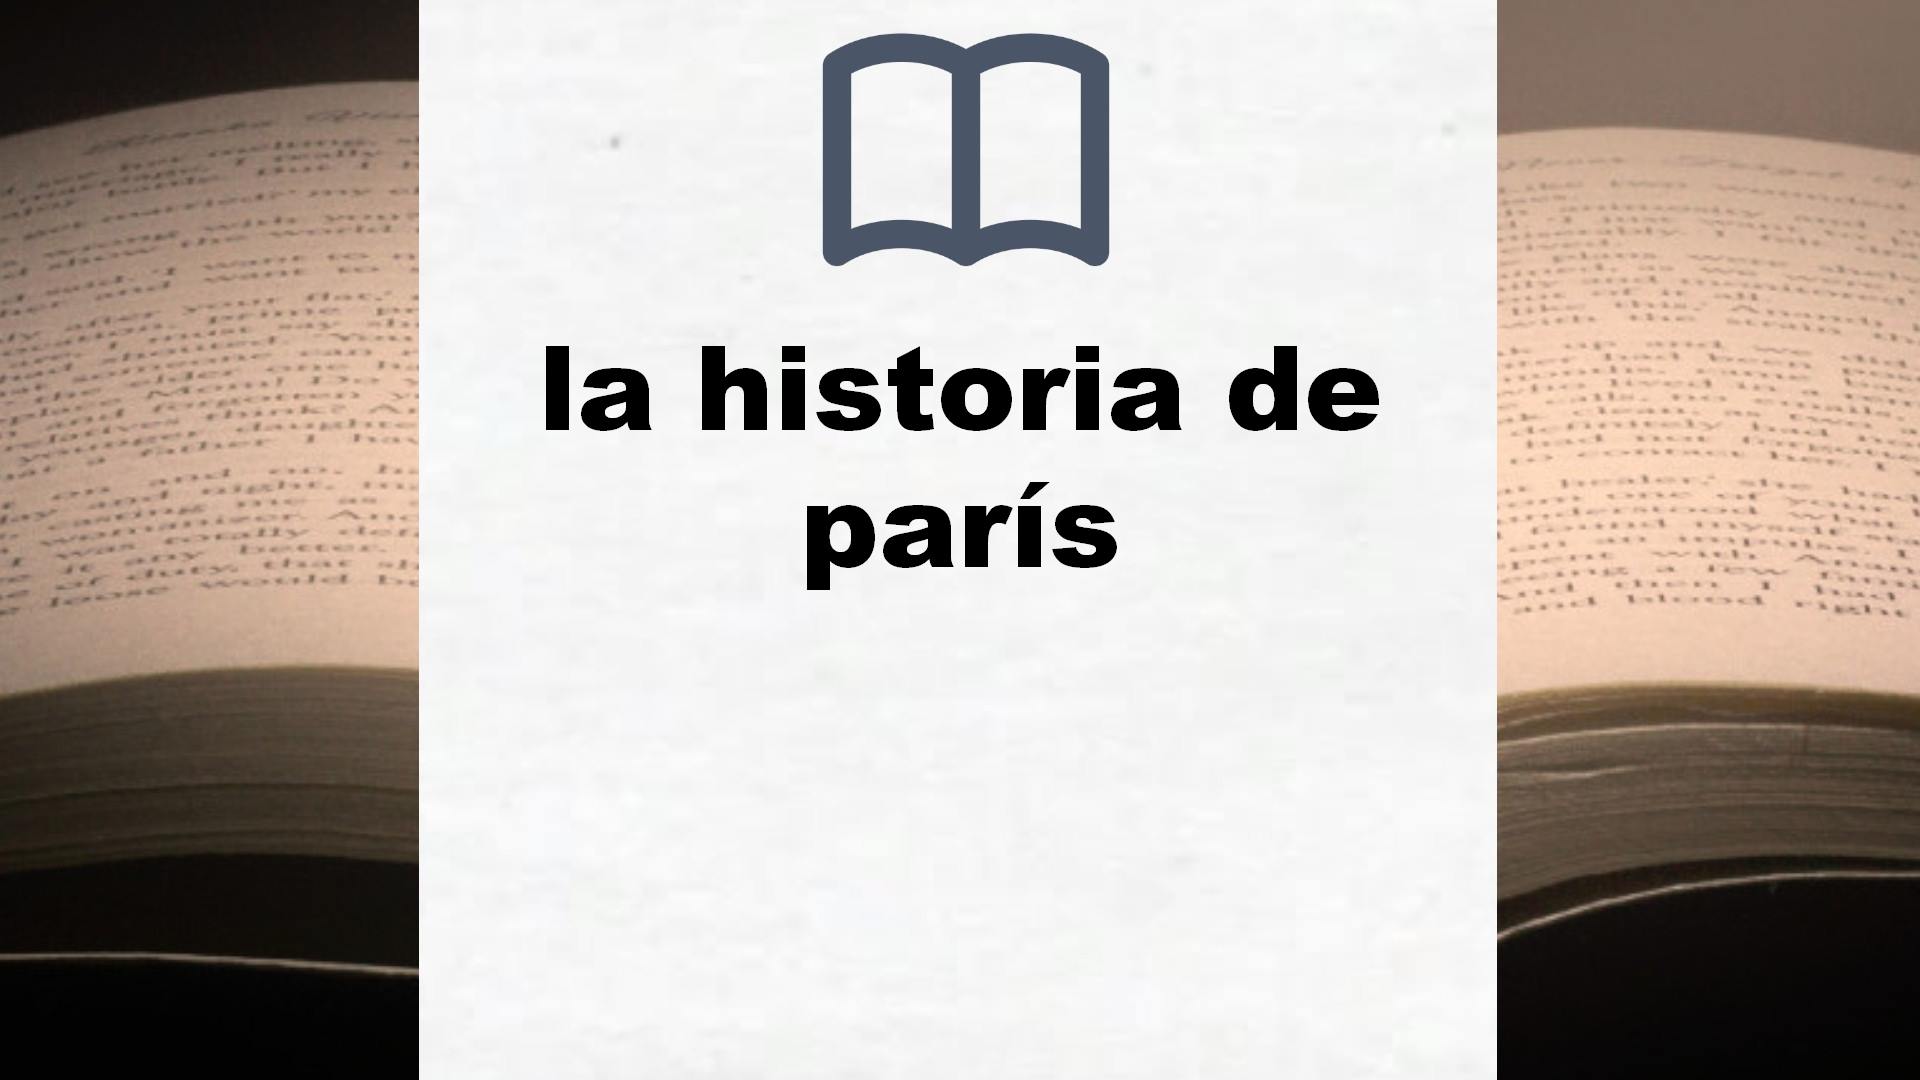 Libros sobre la historia de parís